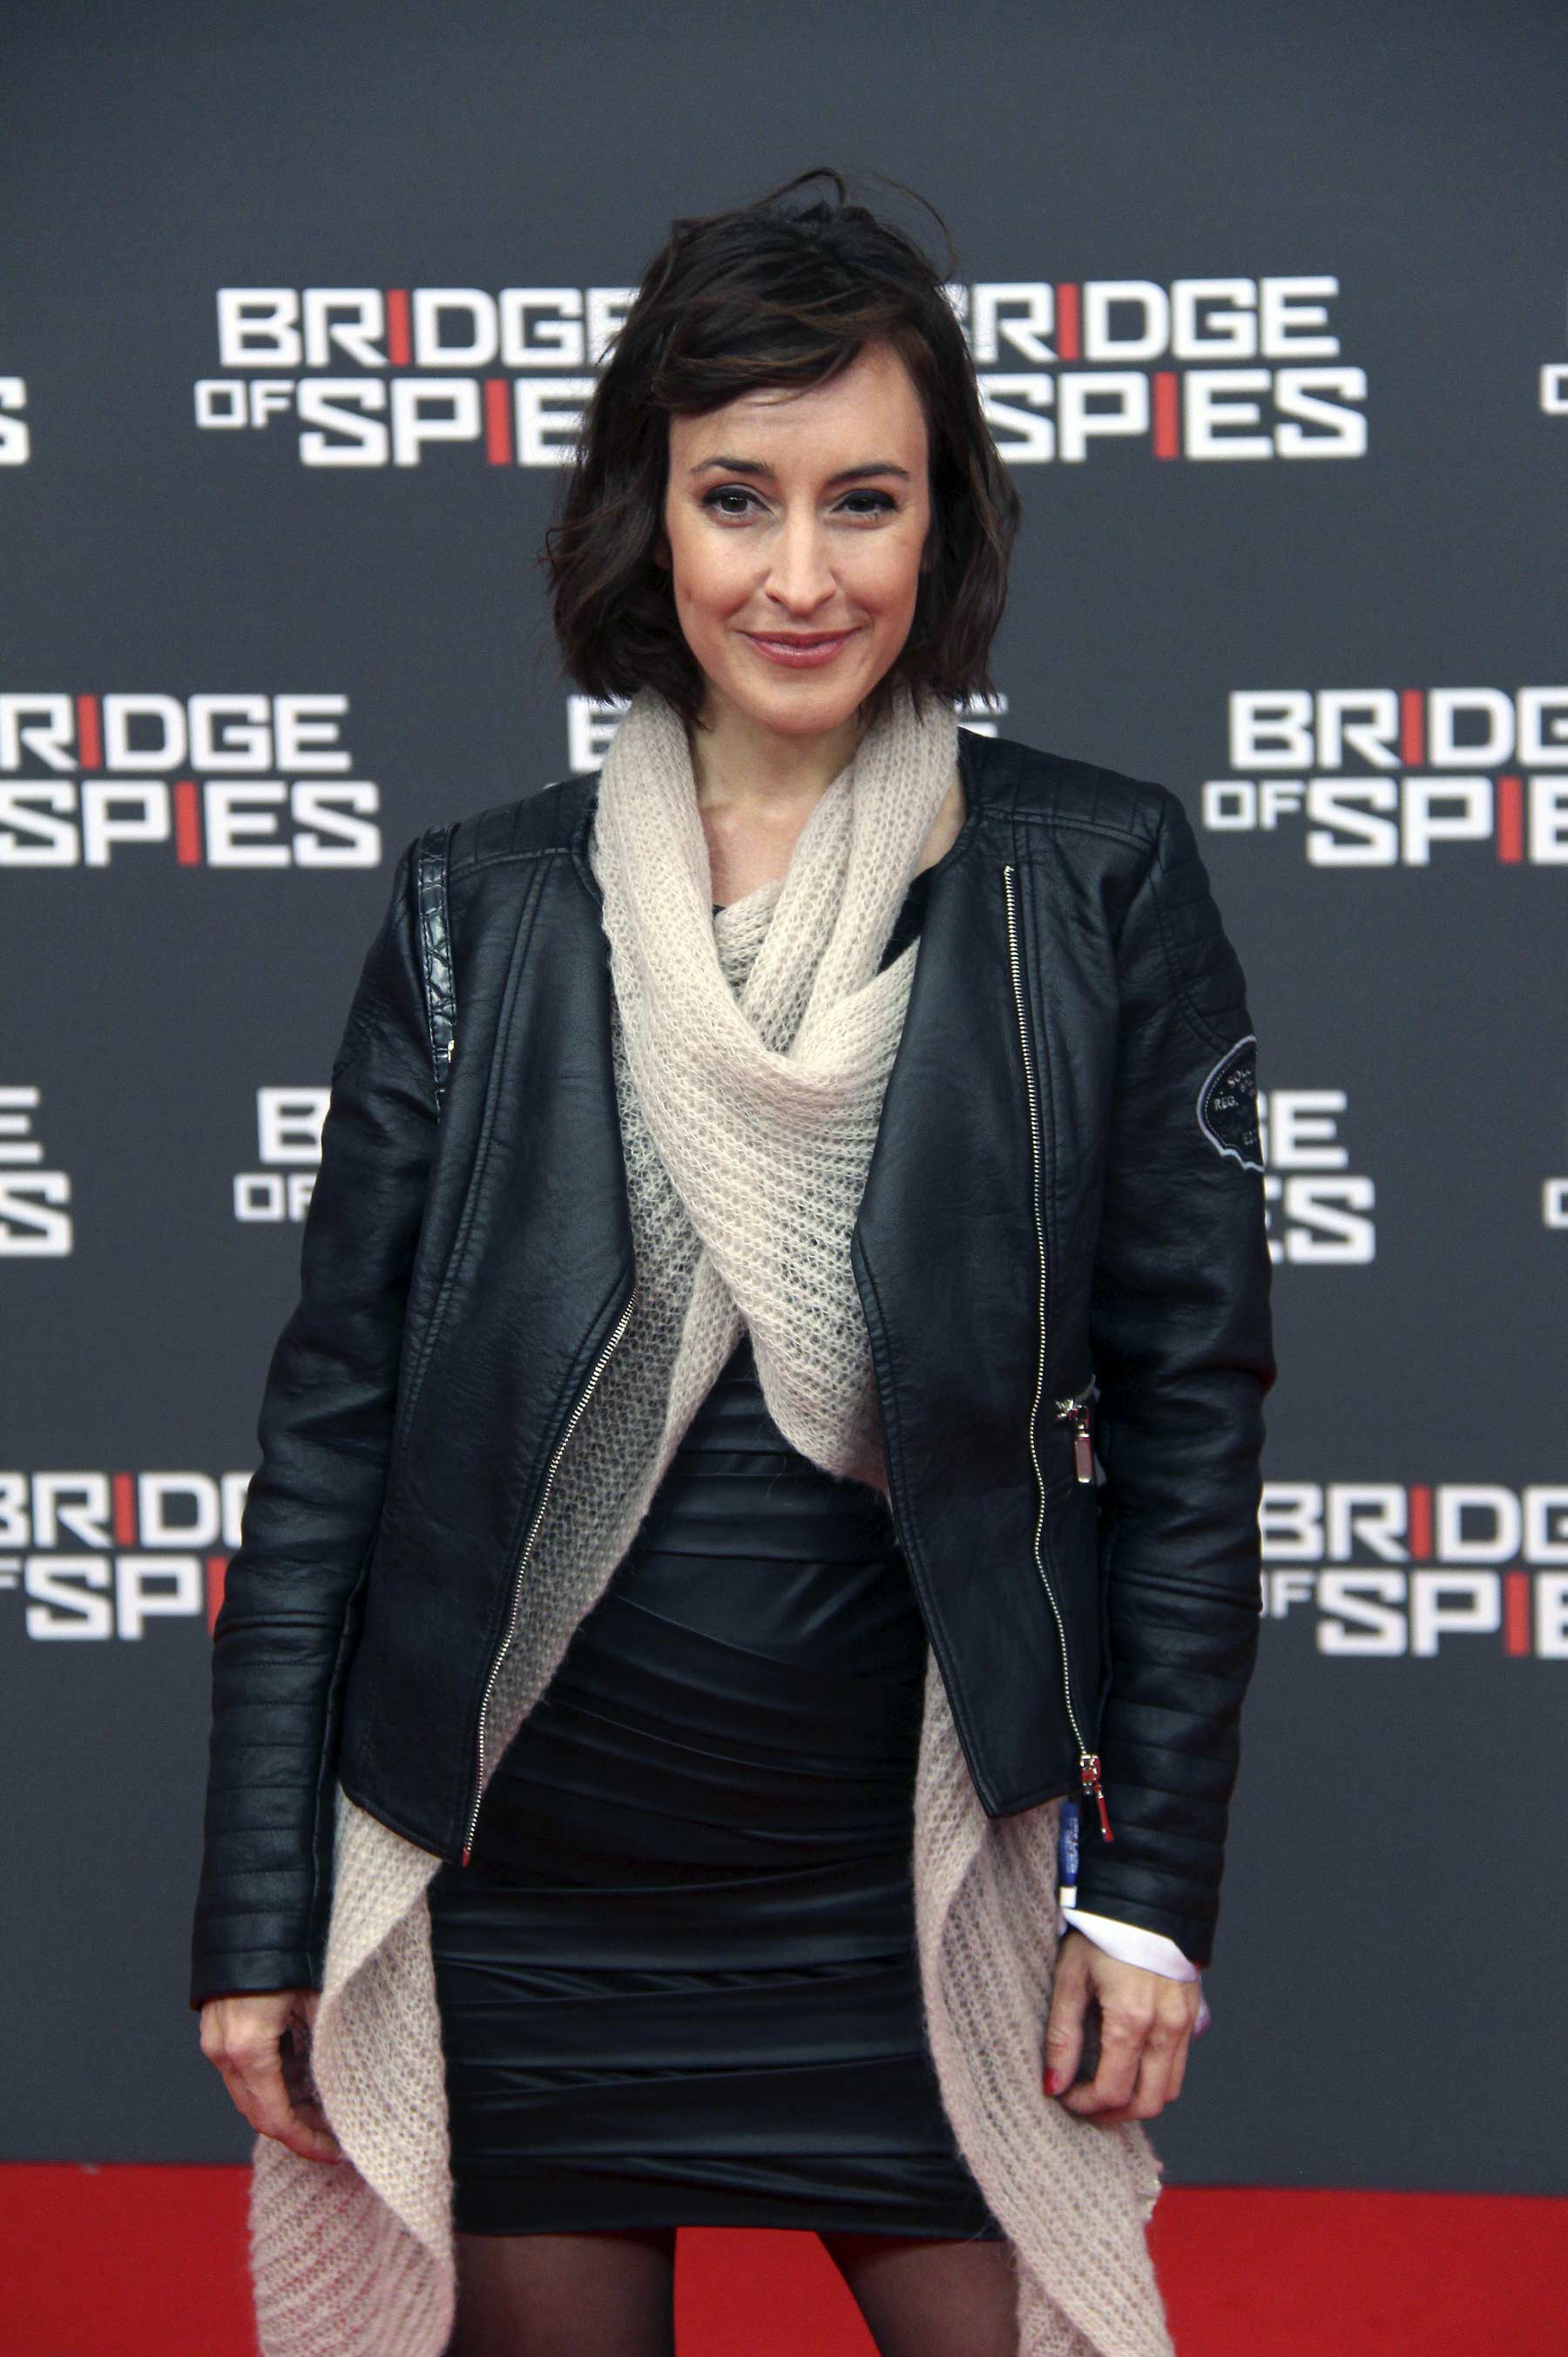 Maike von Bremen attends The Berlin premiere of Bridge of Spies